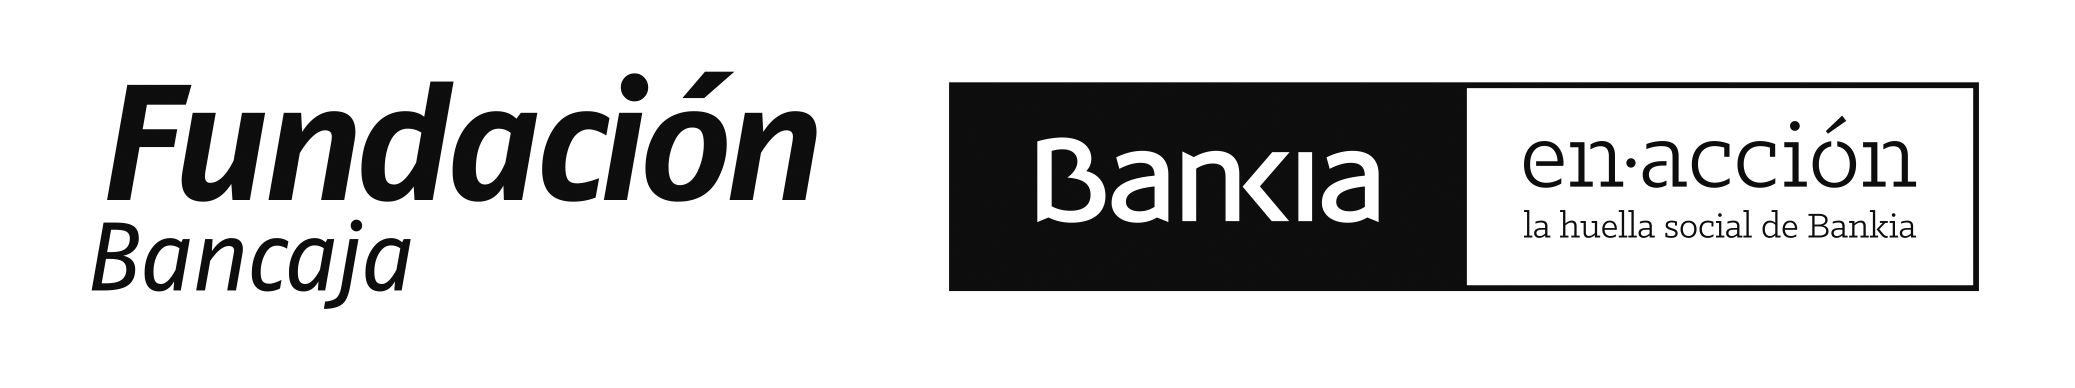 Fundación Bancaja Bankia